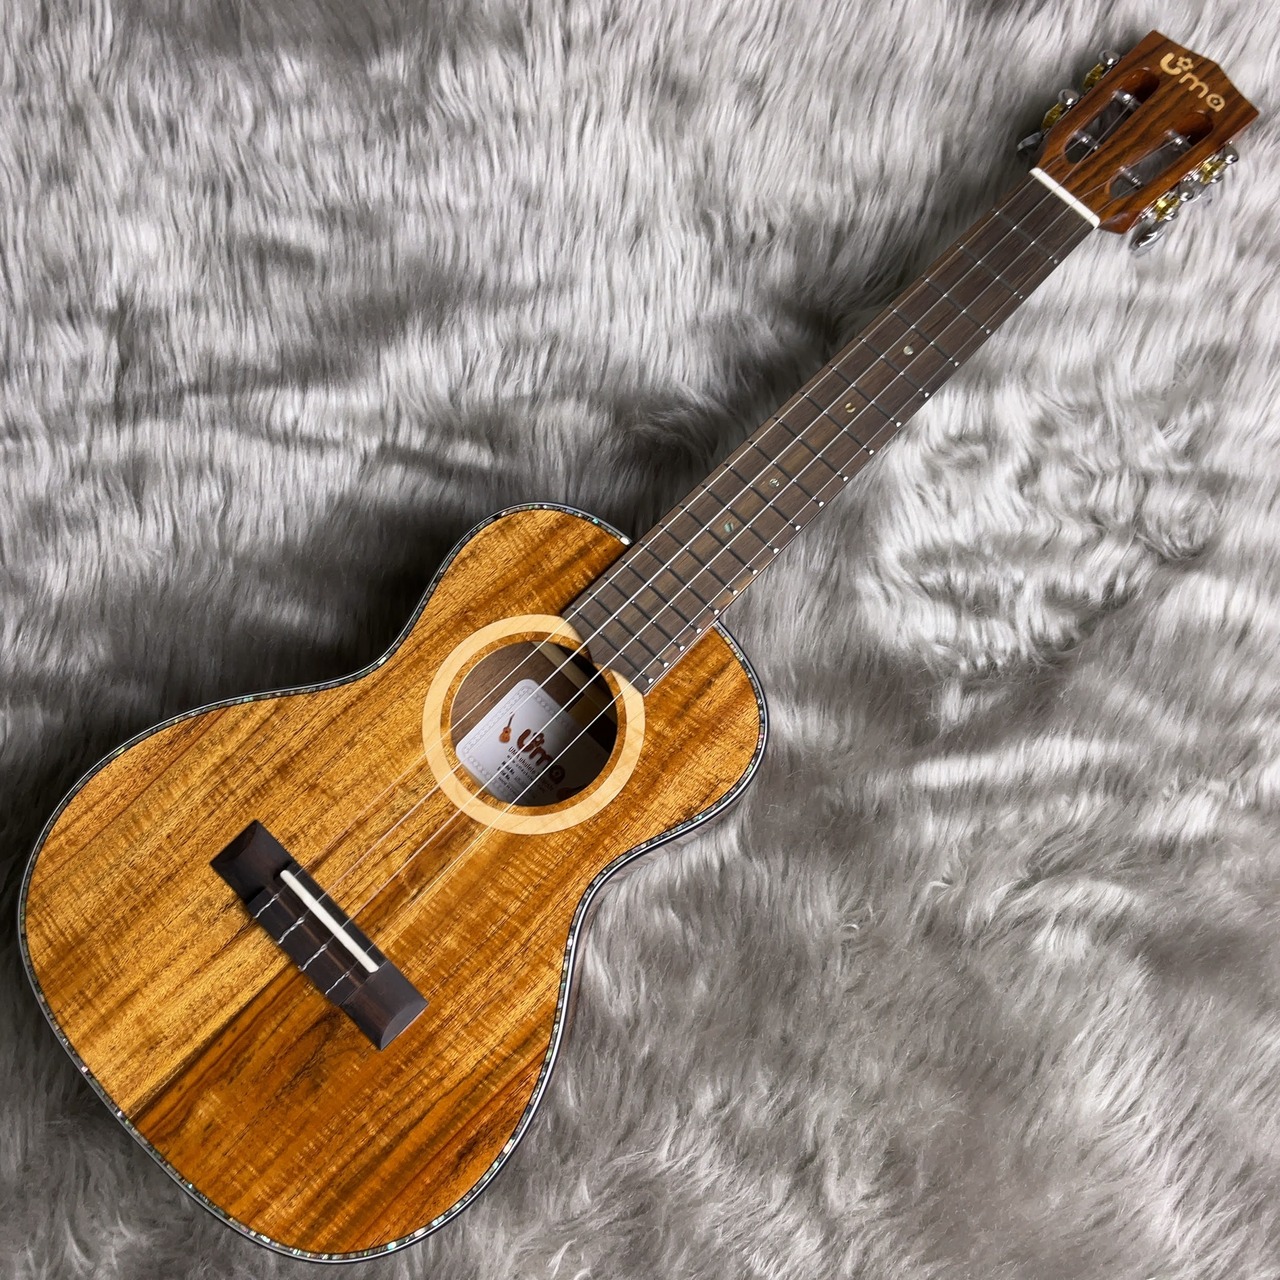 ウクレレ商品情報【試奏動画あり】 | Uma ukulele UK-30ST EVO